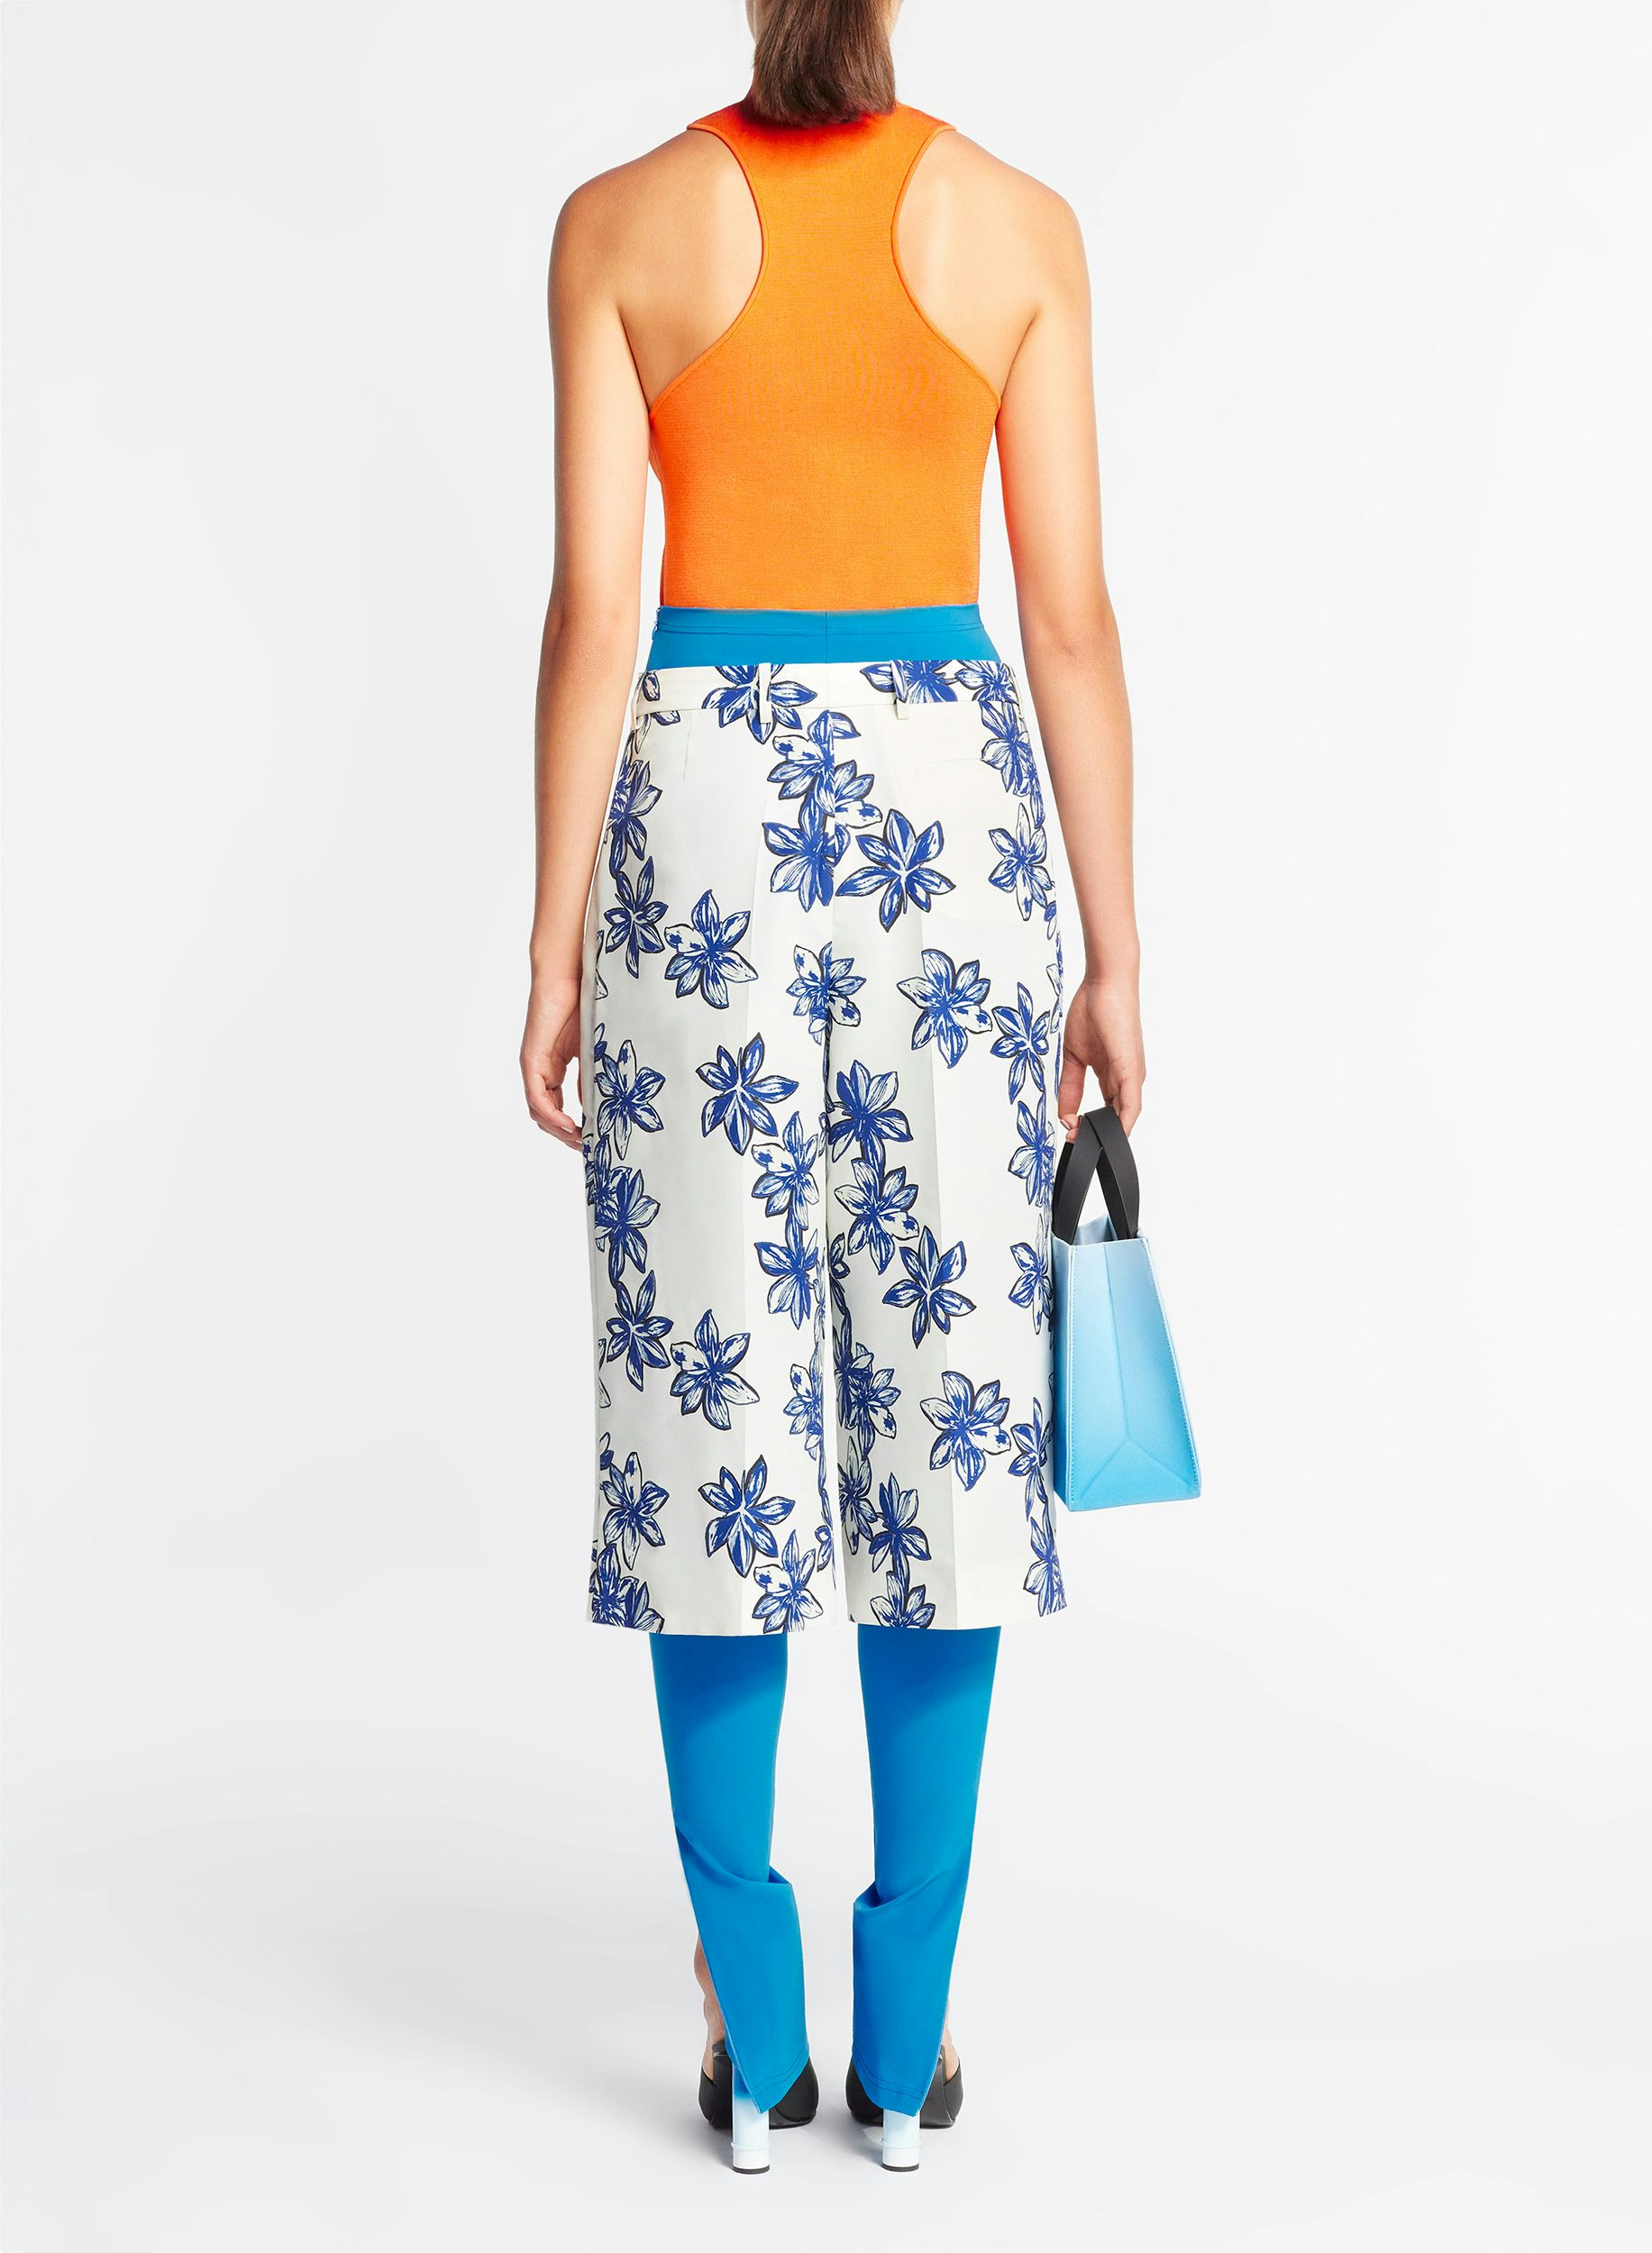 Bermuda pants in lotus flower print - Nina Ricci